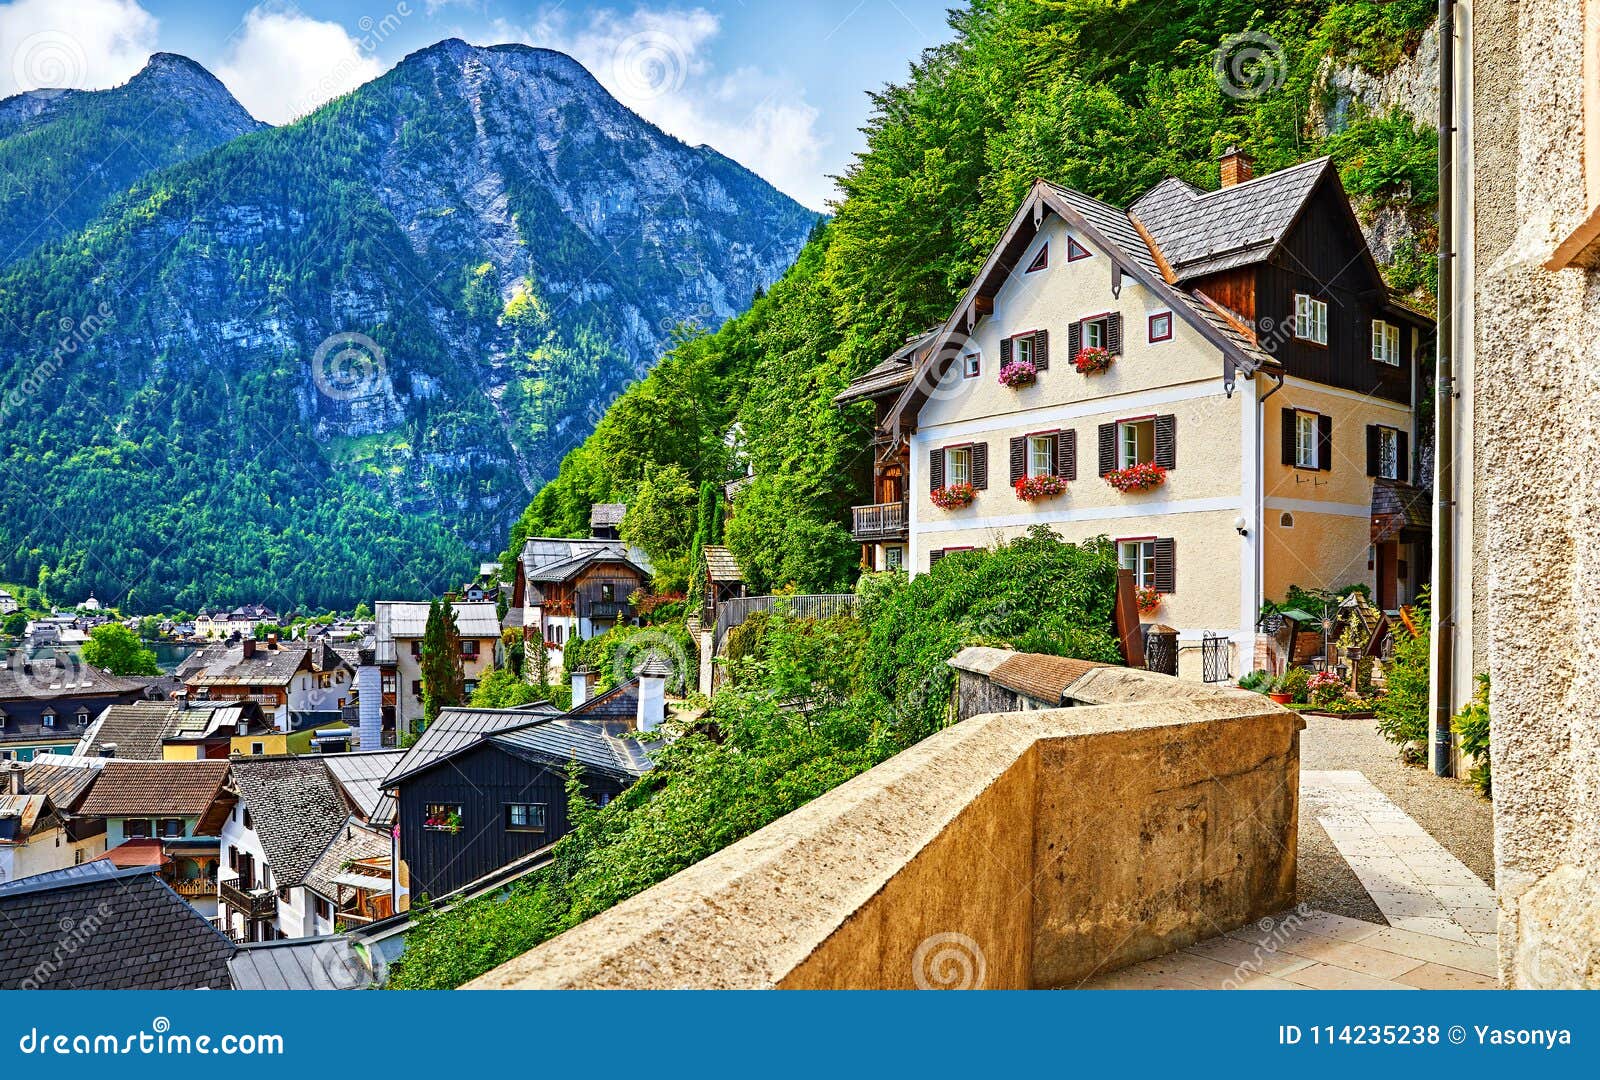 Купить дом в австрии хальштатт зарплата германия